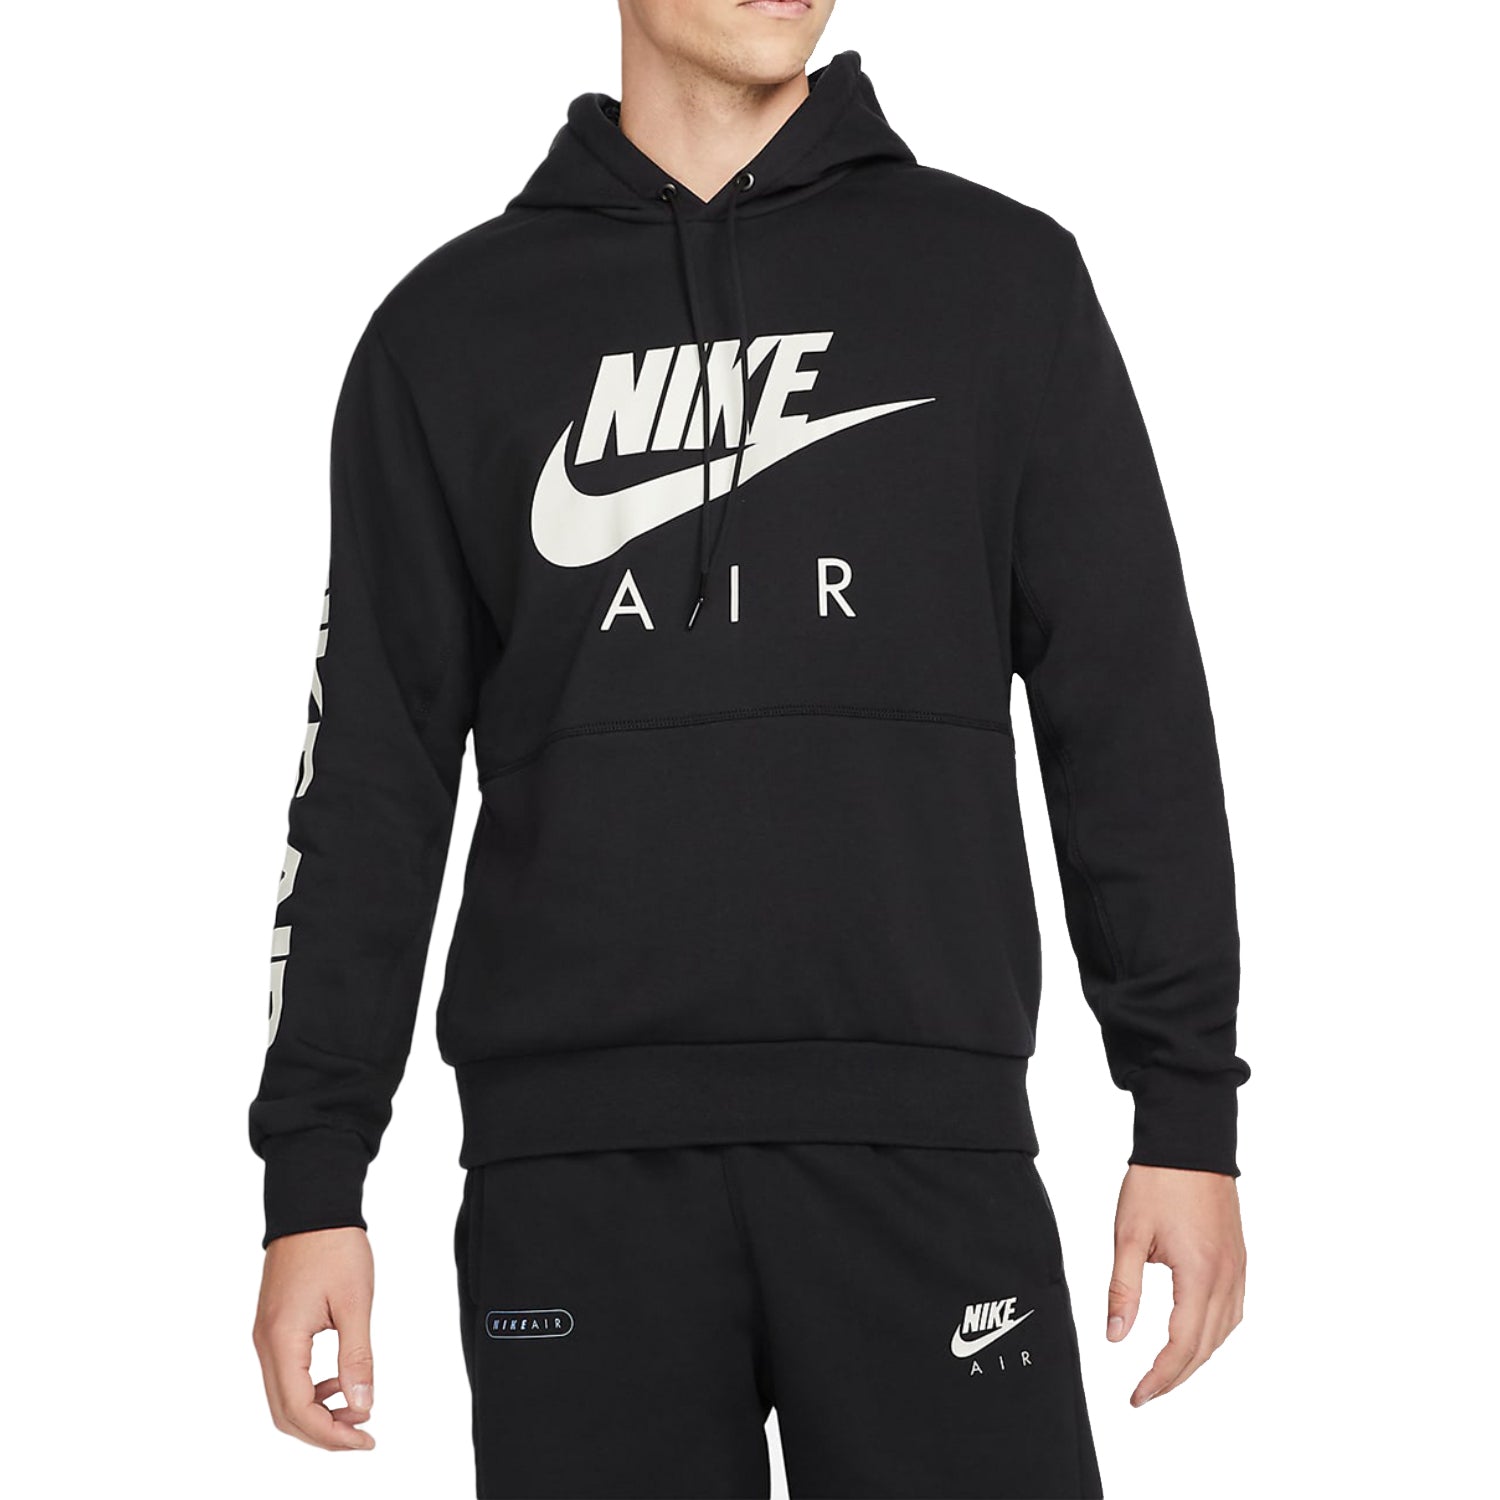 Nike Air Brushed-back Fleece Pullover Hoodie Mens Style : Dm5202